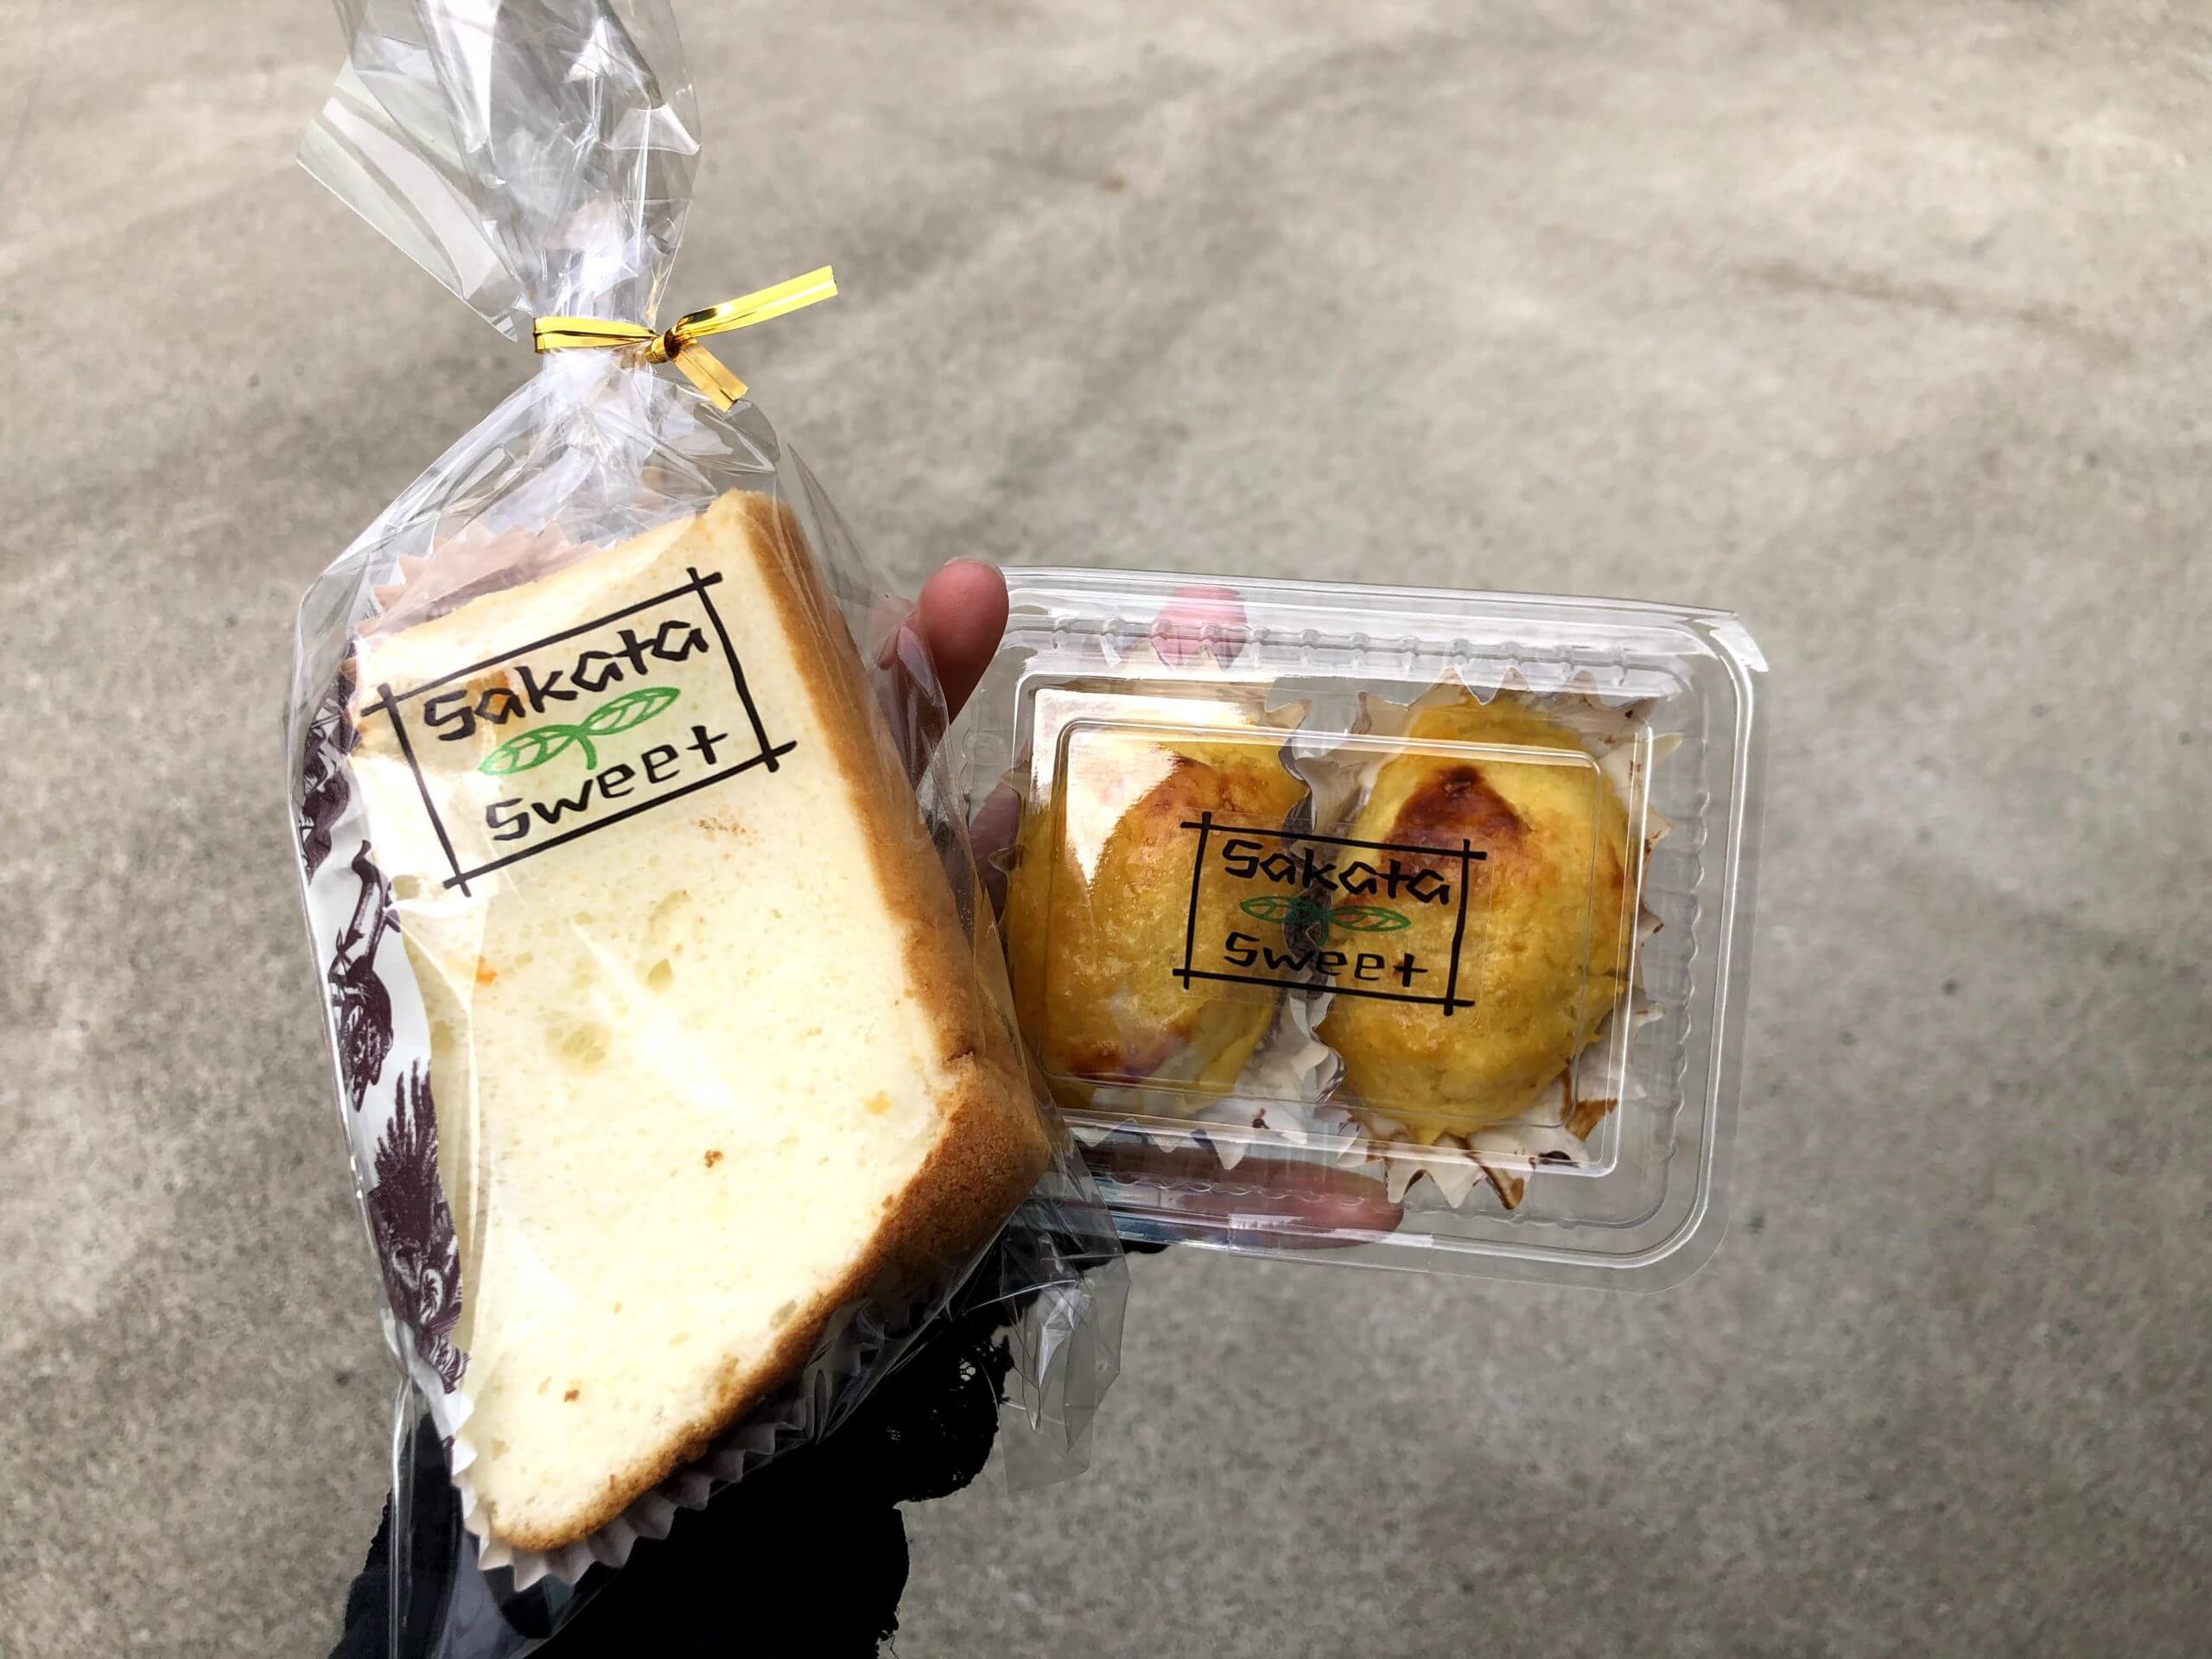 Sakata Sweet -サカタスウィート-】シフォンケーキはもちろん、スイートポテトに感動したので見てください《阿蘇郡西原村大字小森》  さるクマ-さるこう、熊本-